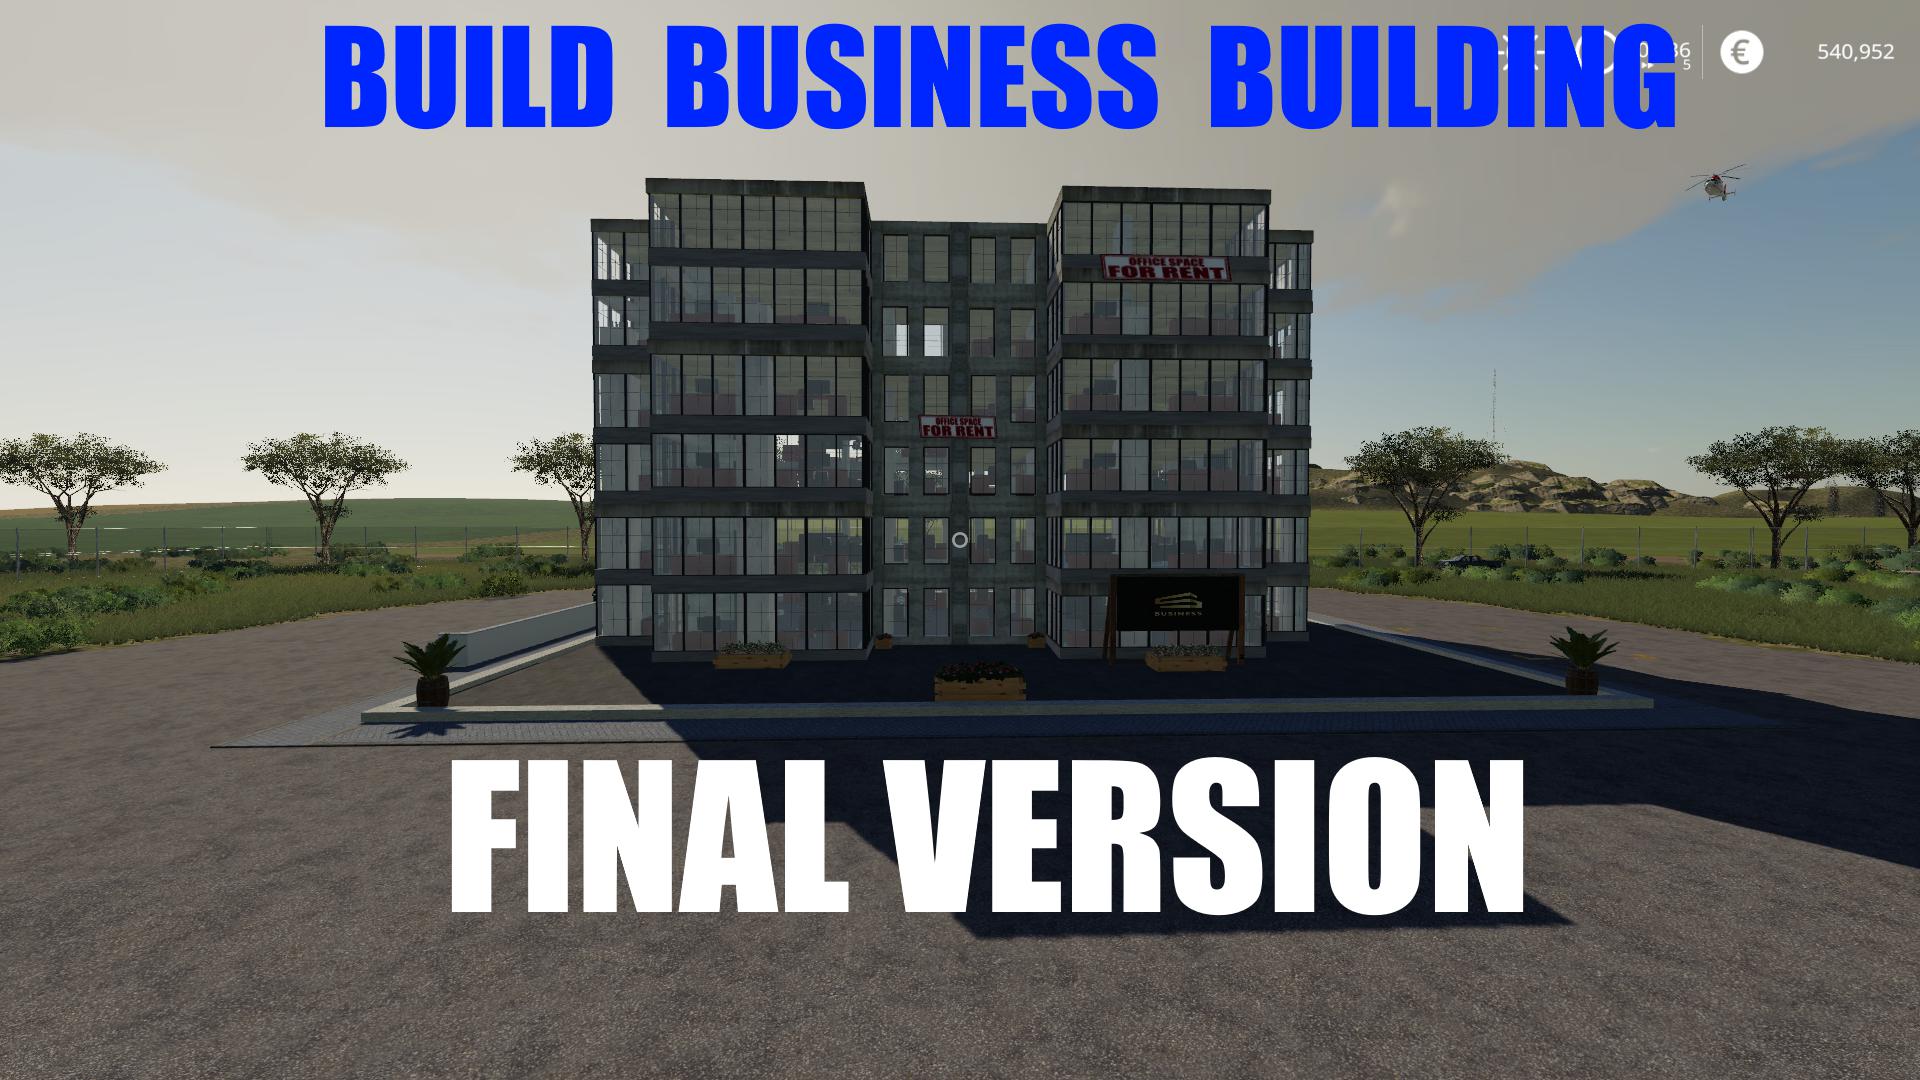 BUILD A BUSINESS BUILDING FINAL